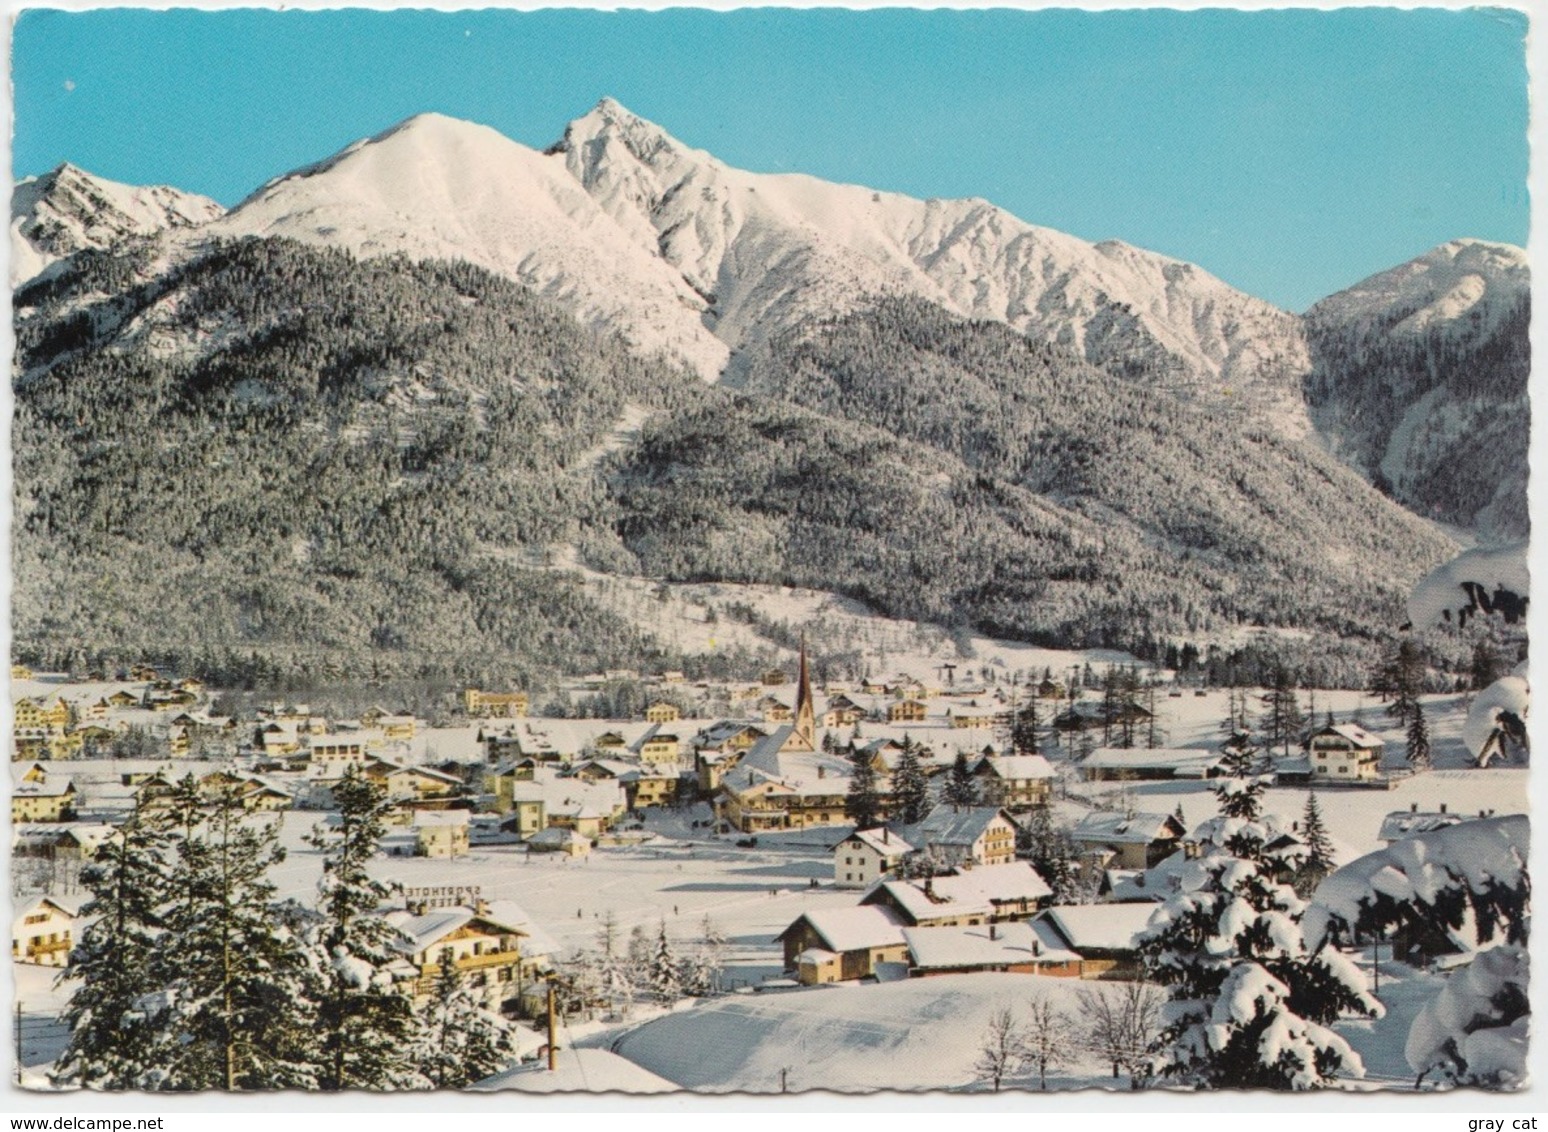 Wintersportplatz Seefeld, Tirol, 1200 M, Austria, 1970 Used Postcard [22002] - Seefeld